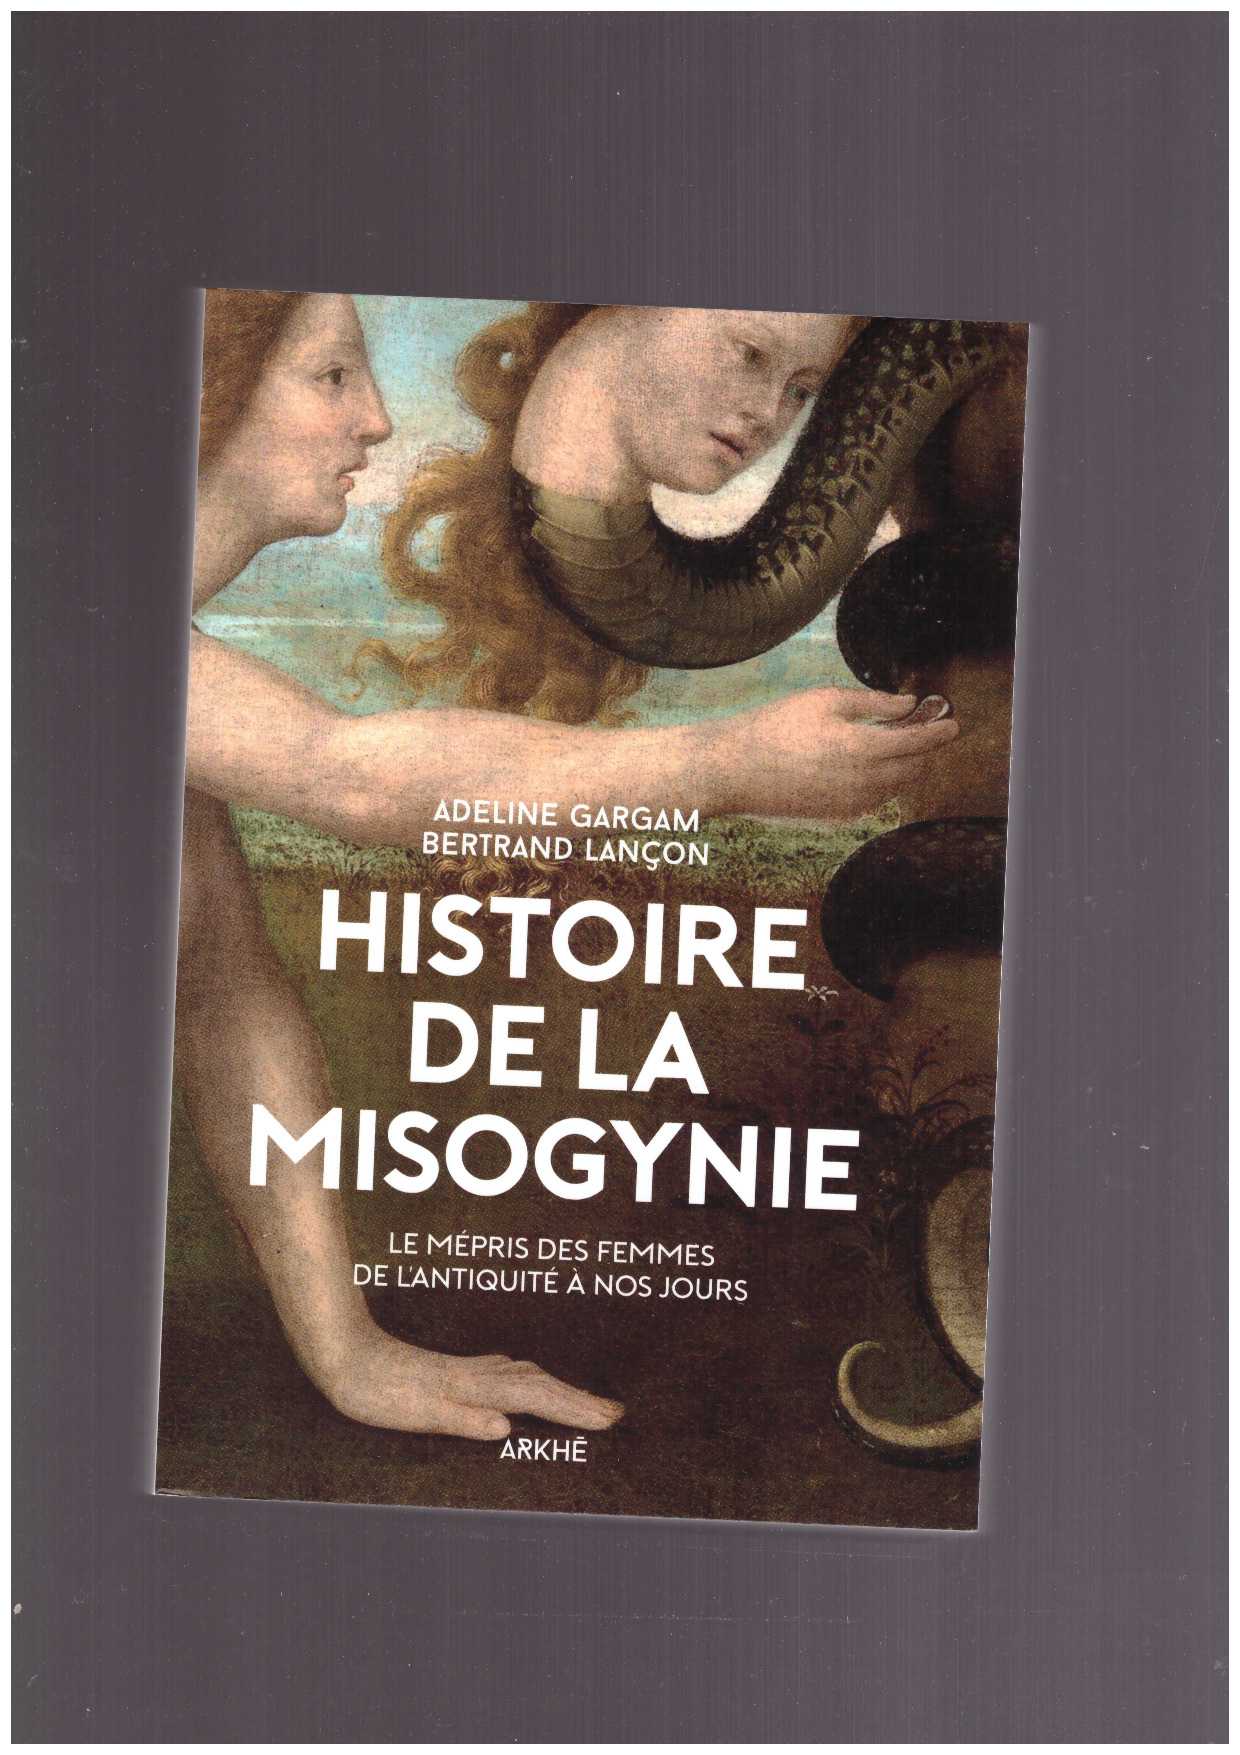 GARGAM, Adeline ; LANCON, Bertrand - Histoire de la misogynie